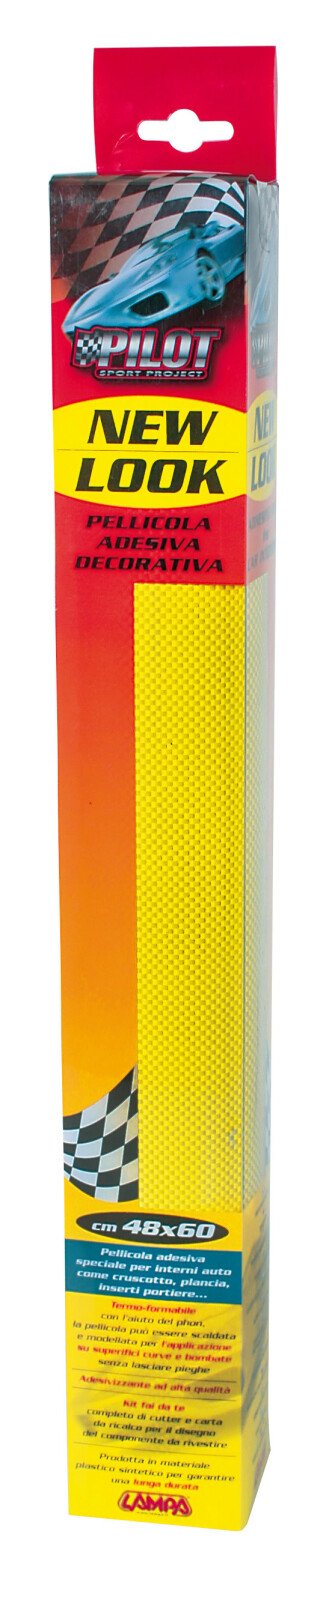 New-Look öntapadós műszerfal fólia 48x60 cm - Karbonszál - Sárga thumb